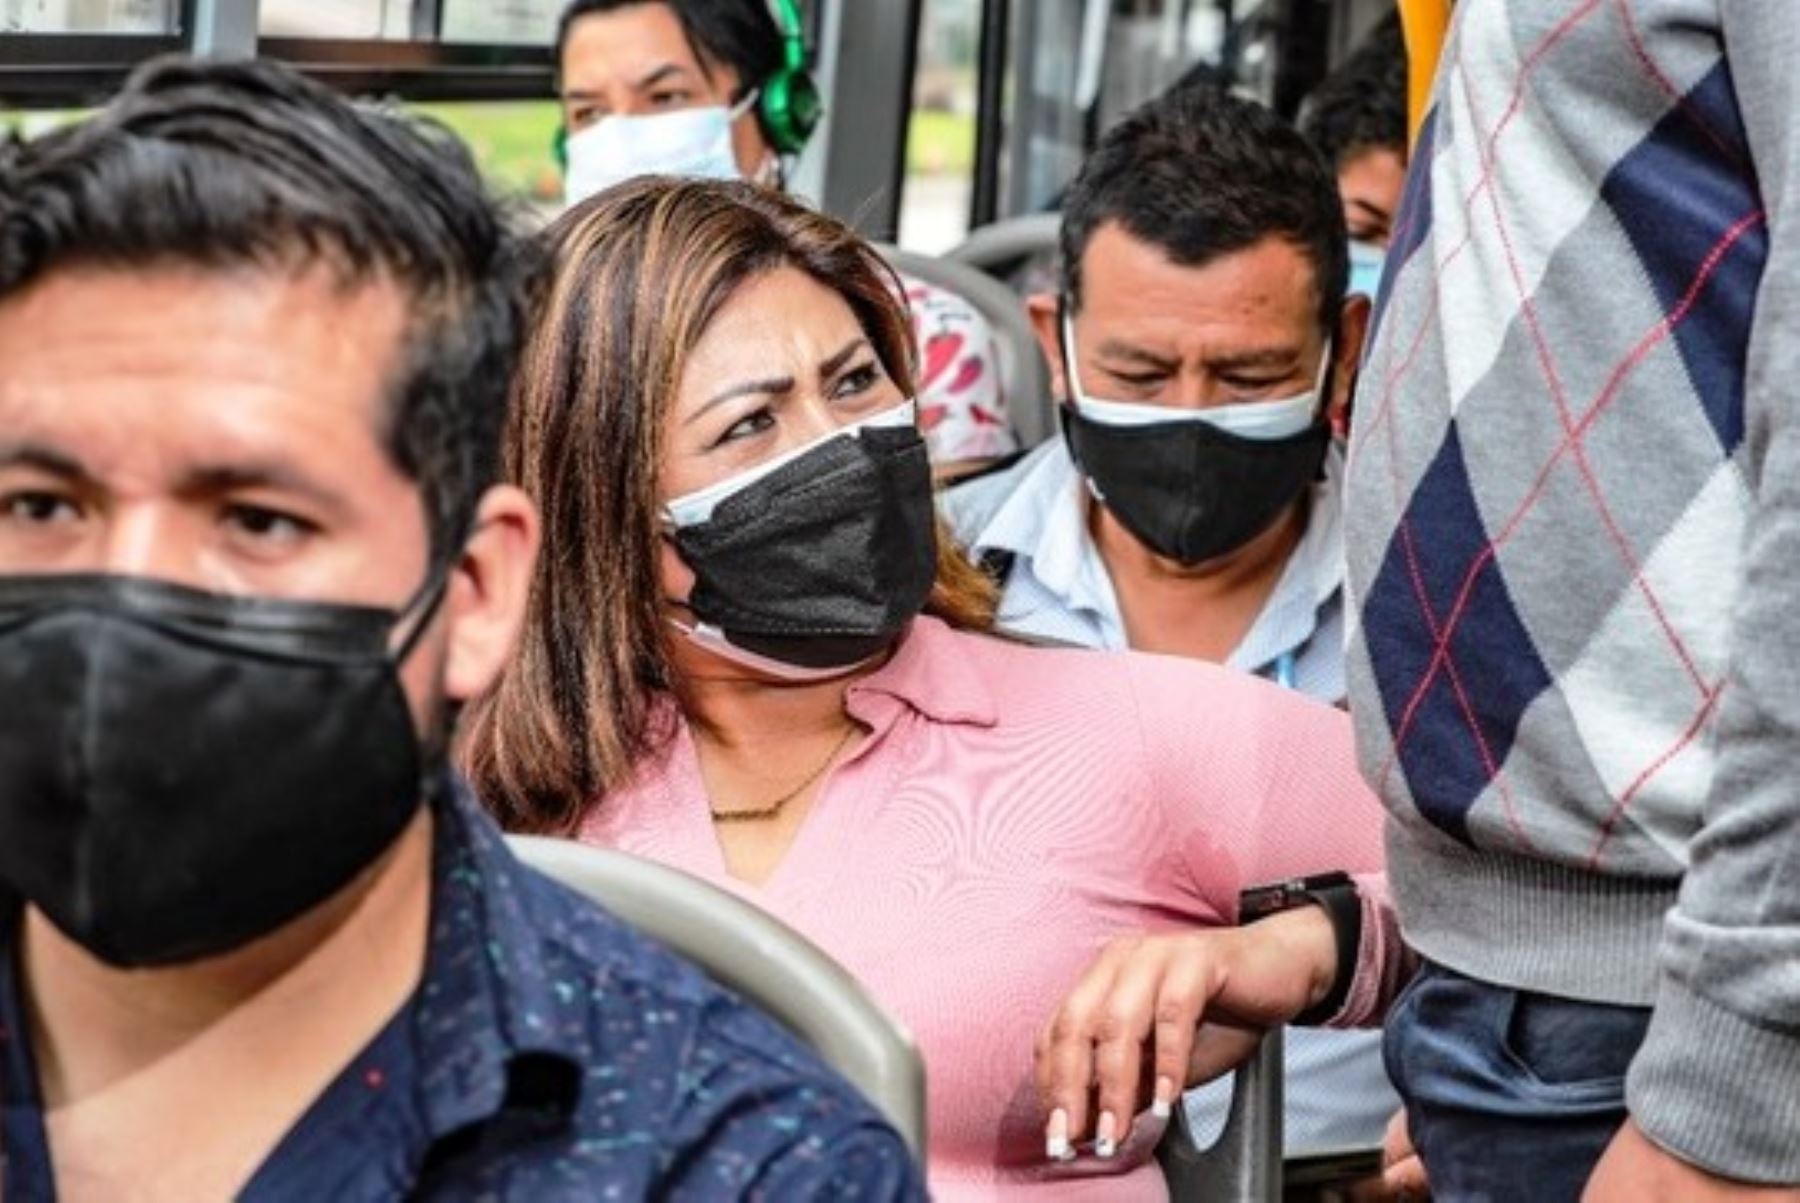 Transportistas que ignoren denuncia de acoso sexual podrían perder habilitación para operar. Foto: ANDINA/Difusión.